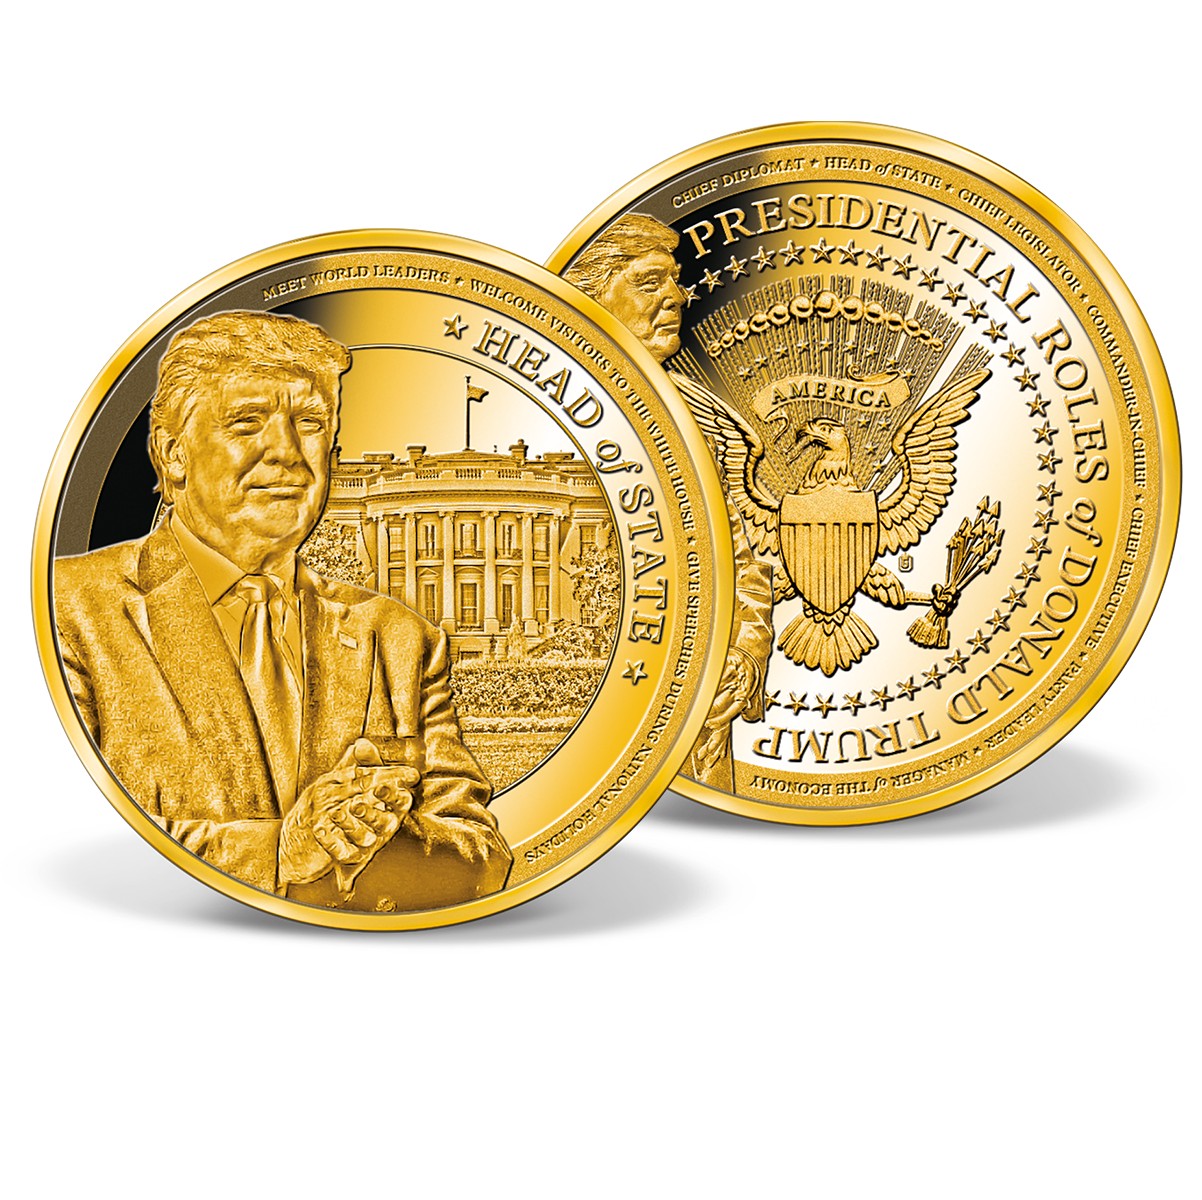 Donald Trump Head of State Commemorative Coin